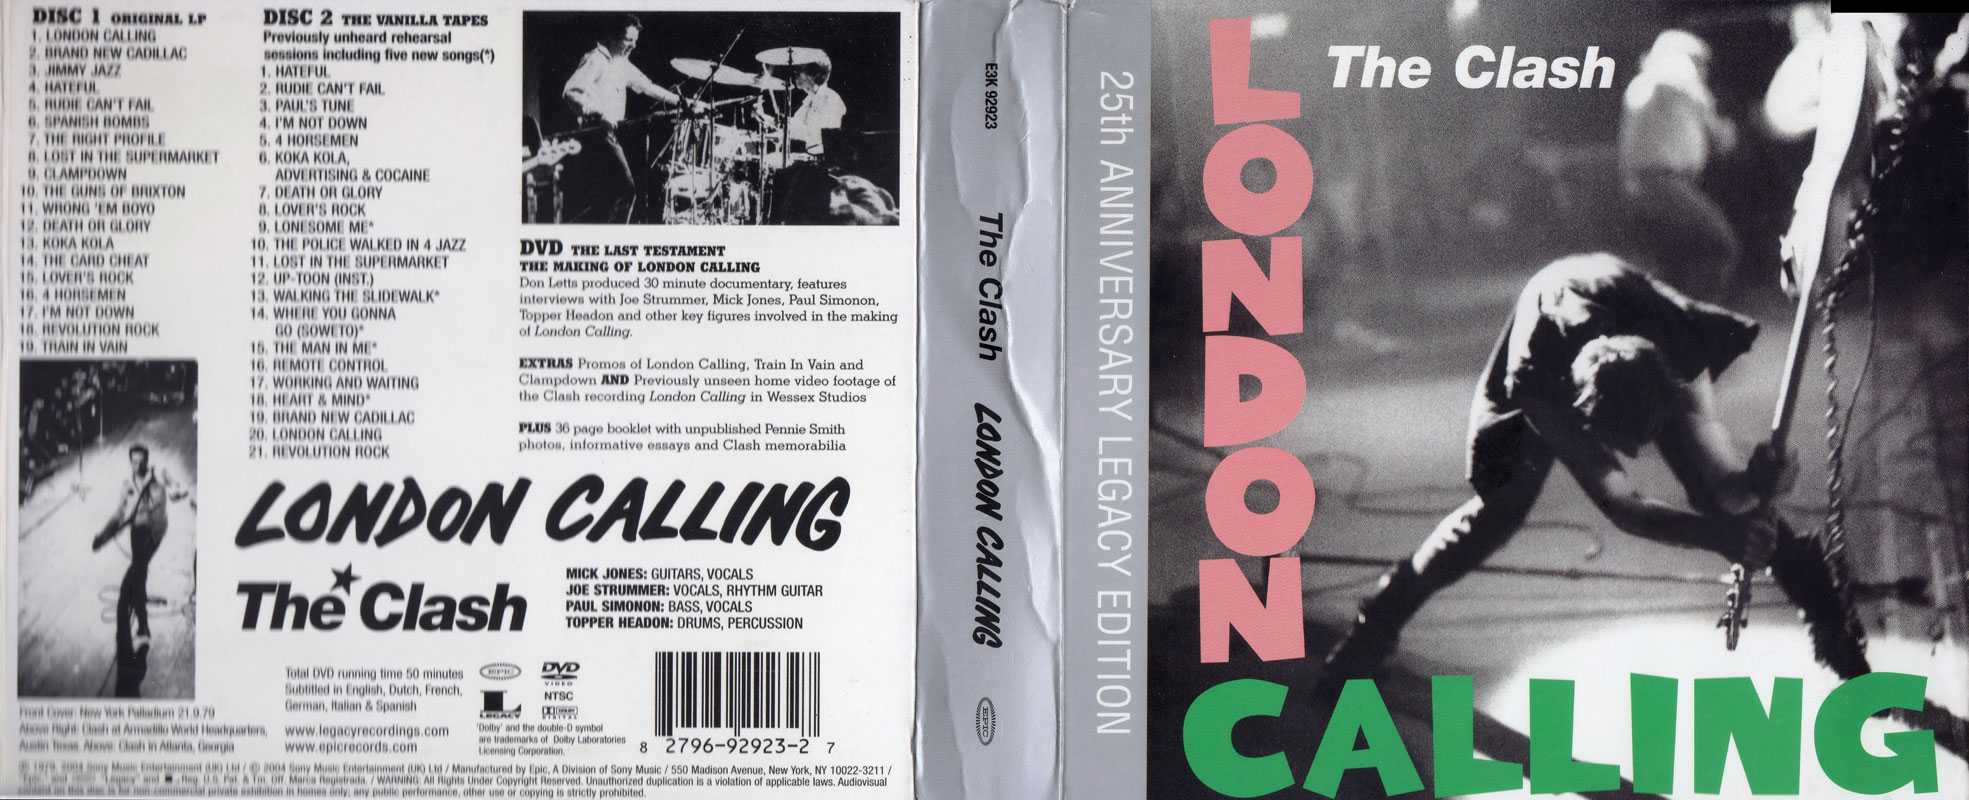 Пол Симонон, бас-гитарист The Clash, парень с обложки альбома London Calling, готовящийся сокрушить свой бас ударом о сцену, отмечает сегодня своё 60-летие